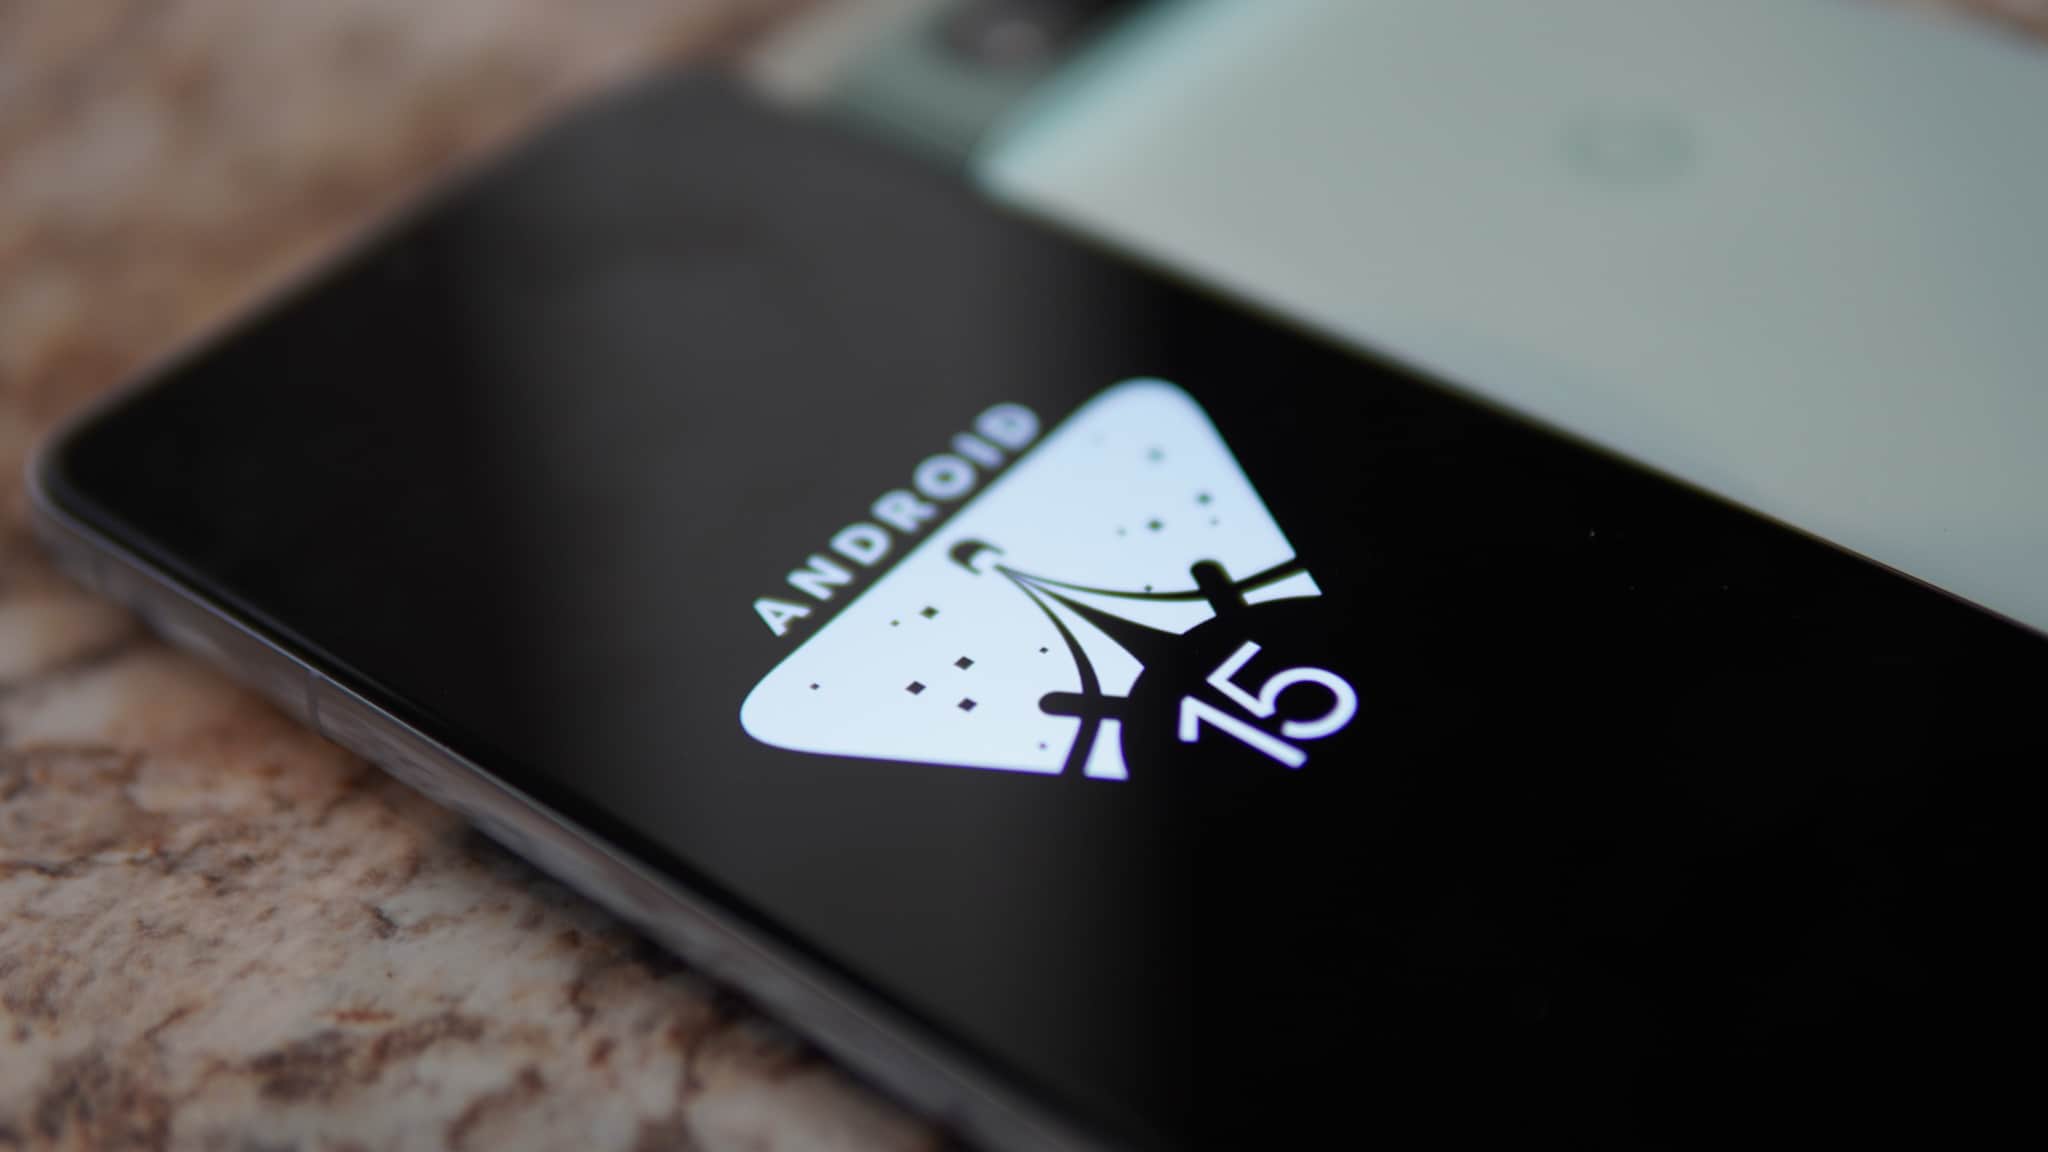 Android 15 puede llevar las rutinas a la hora de dormir a aplicaciones de terceros